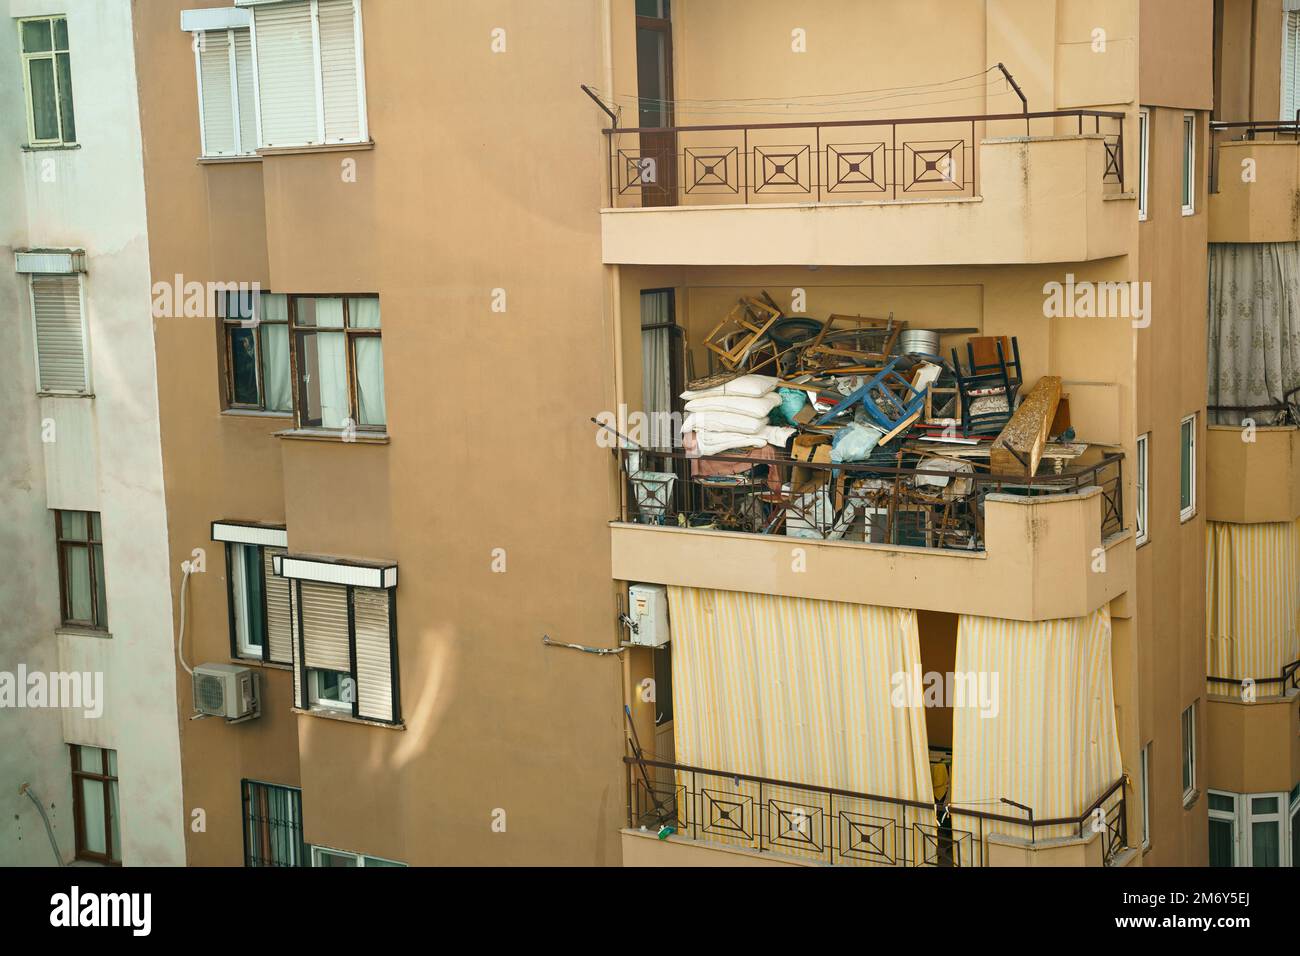 Brutto, terribile disturbo del balcone. Edificio a più piani pieno di rifiuti, mobili vecchi, cose non necessarie, scatole, sedie, cuscini, vestiti, vetrata Foto Stock